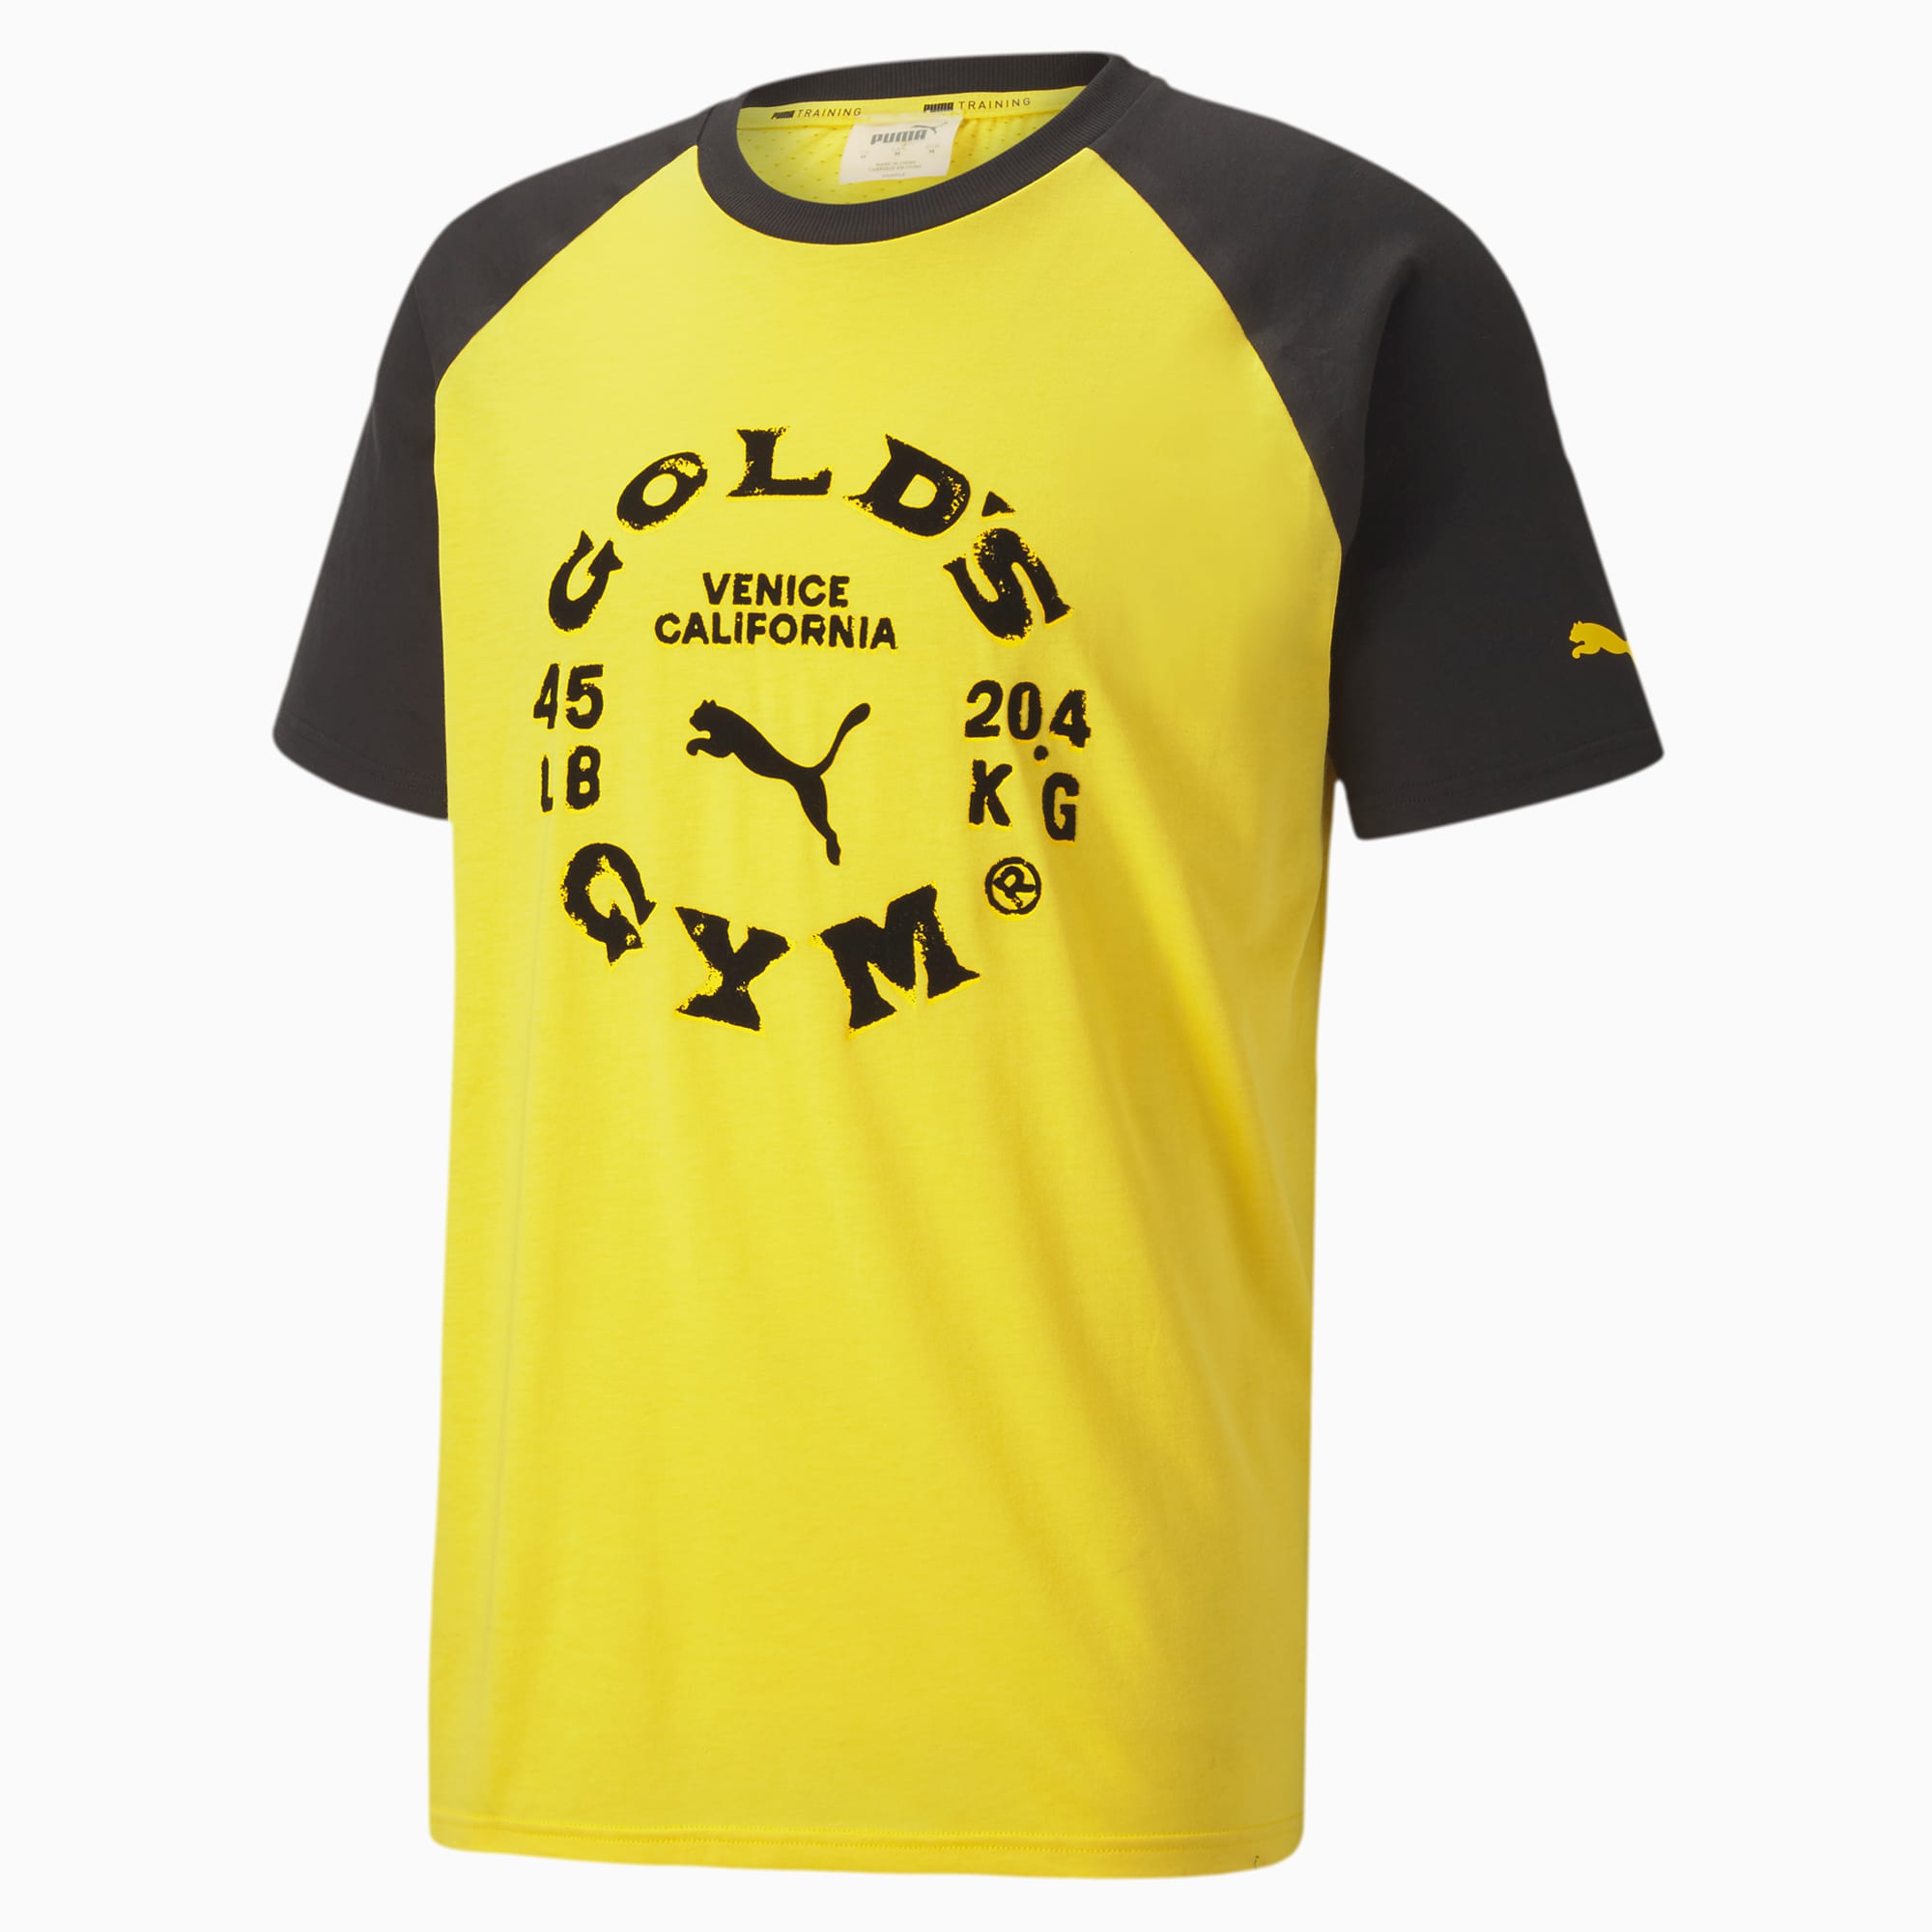 puma gym t shirt